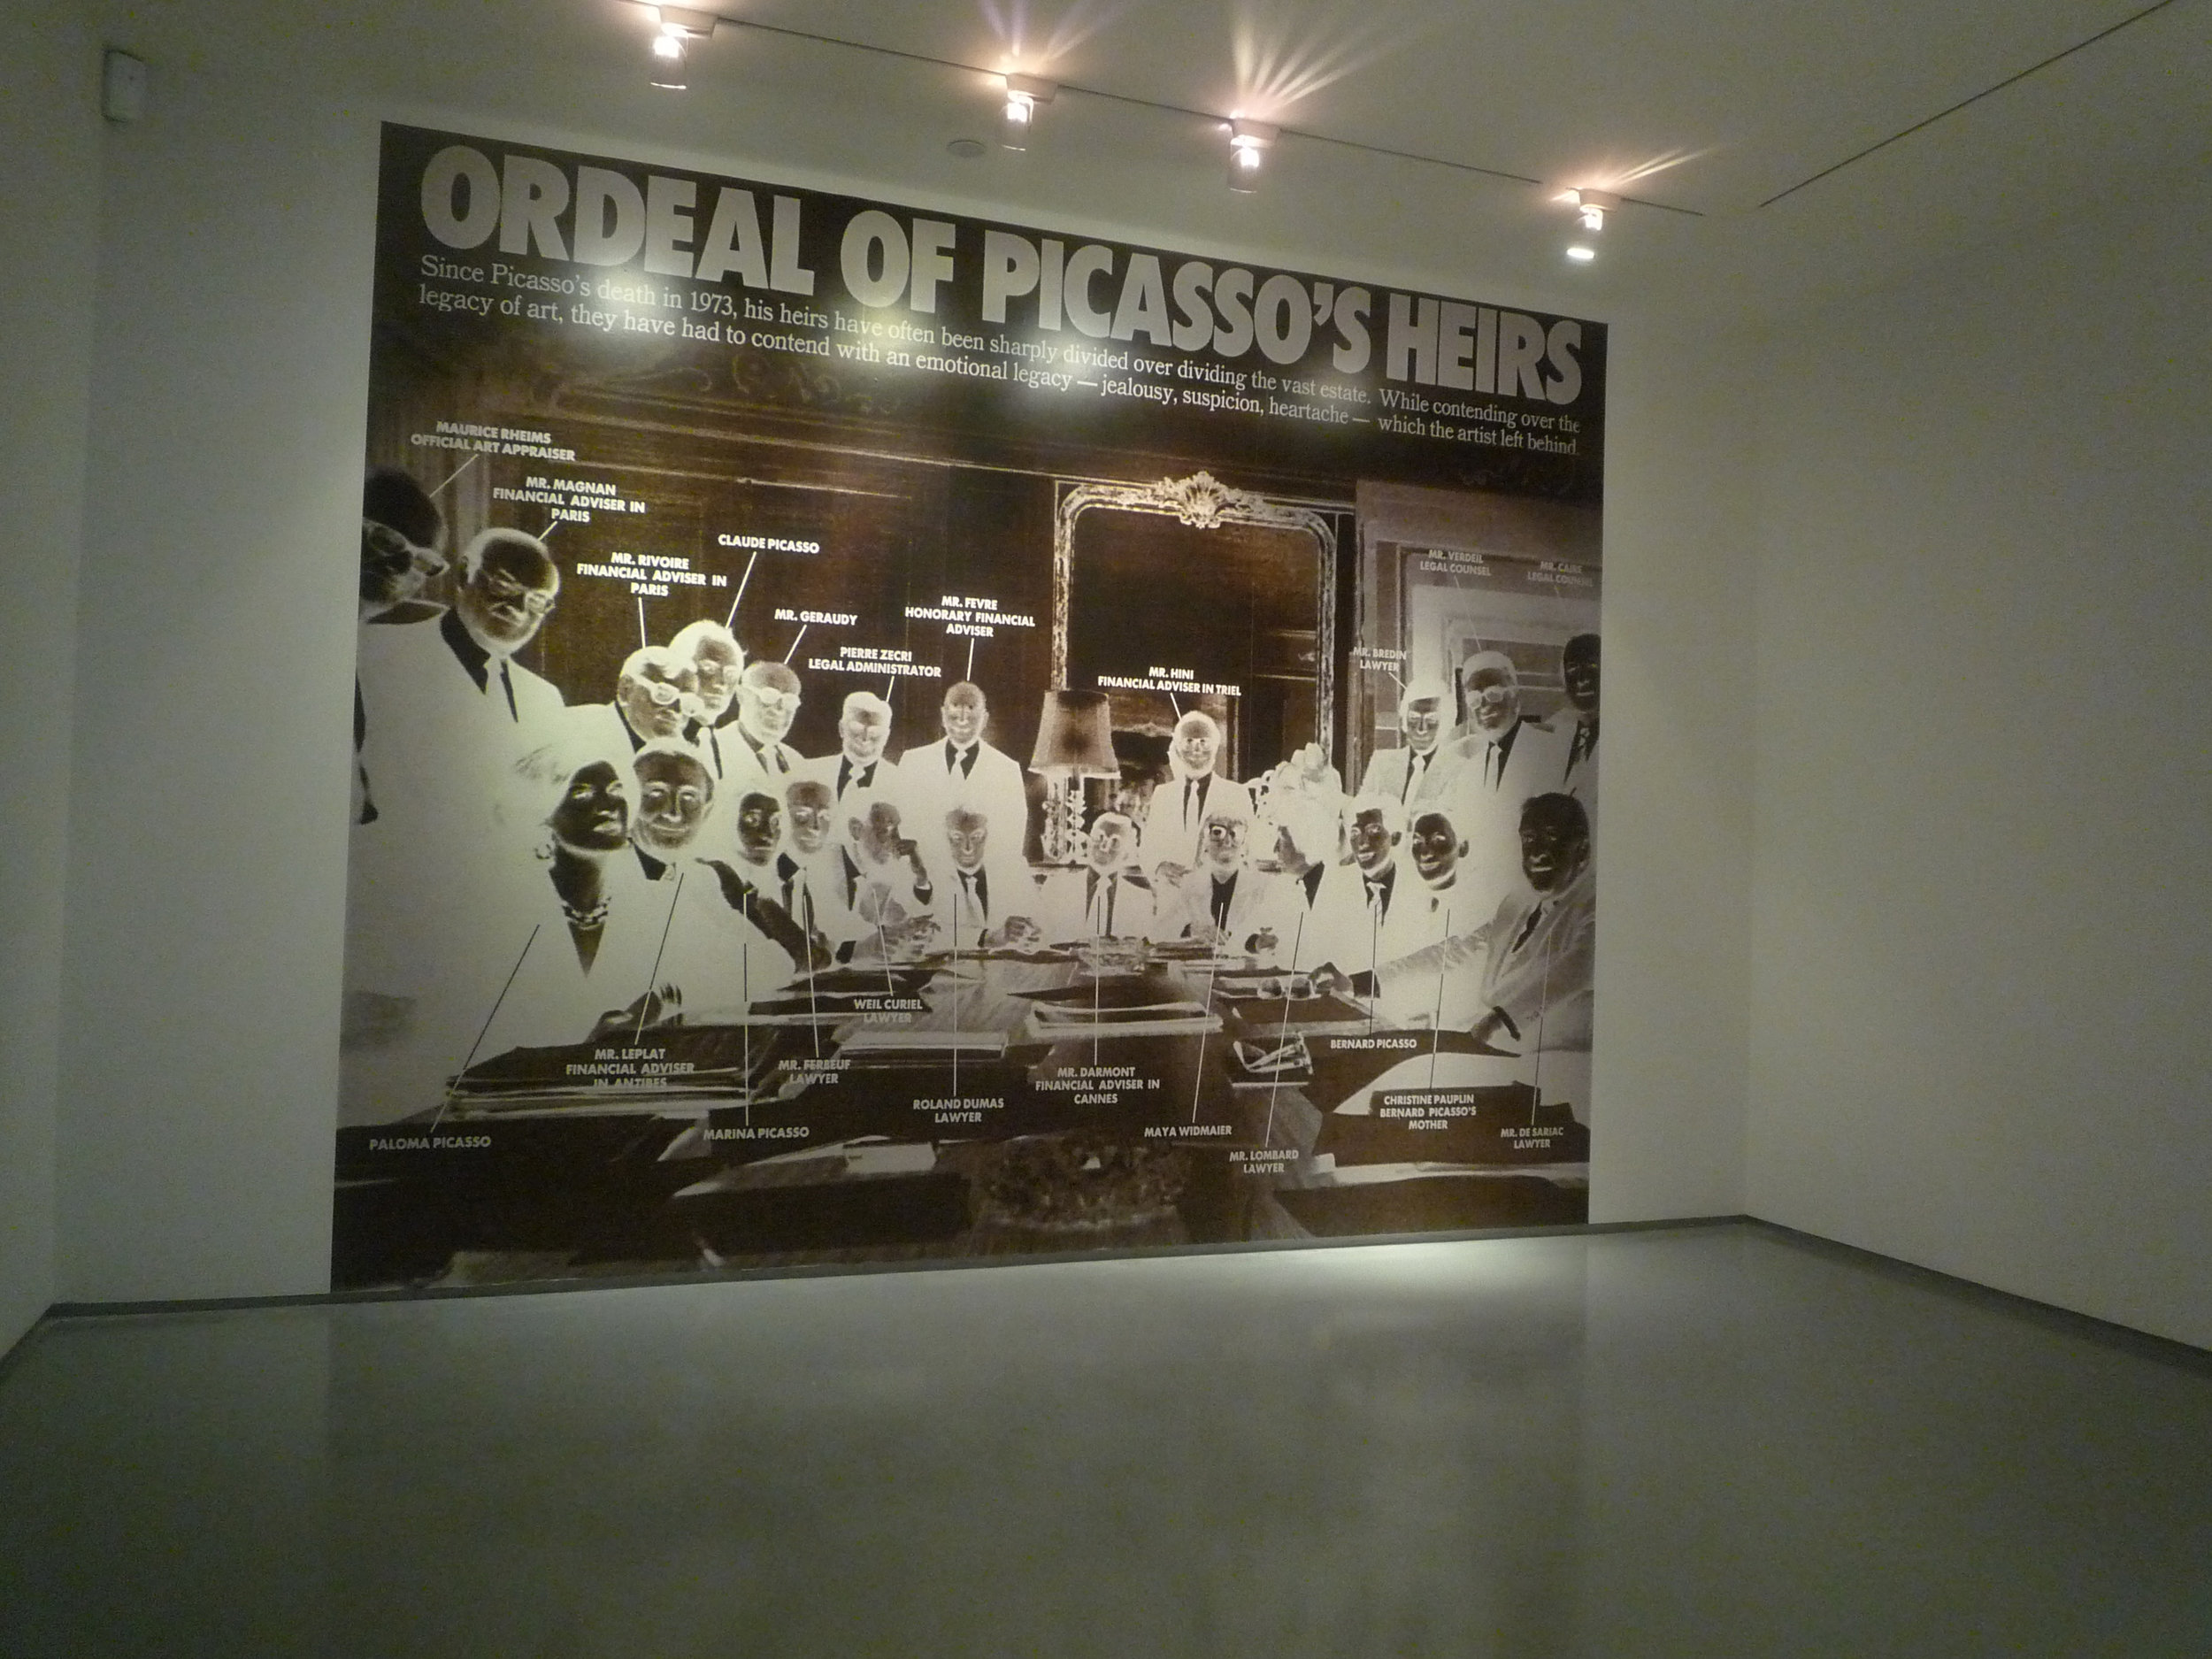 Muntadas, Ordeal of Picasso’s Heirs, 2012